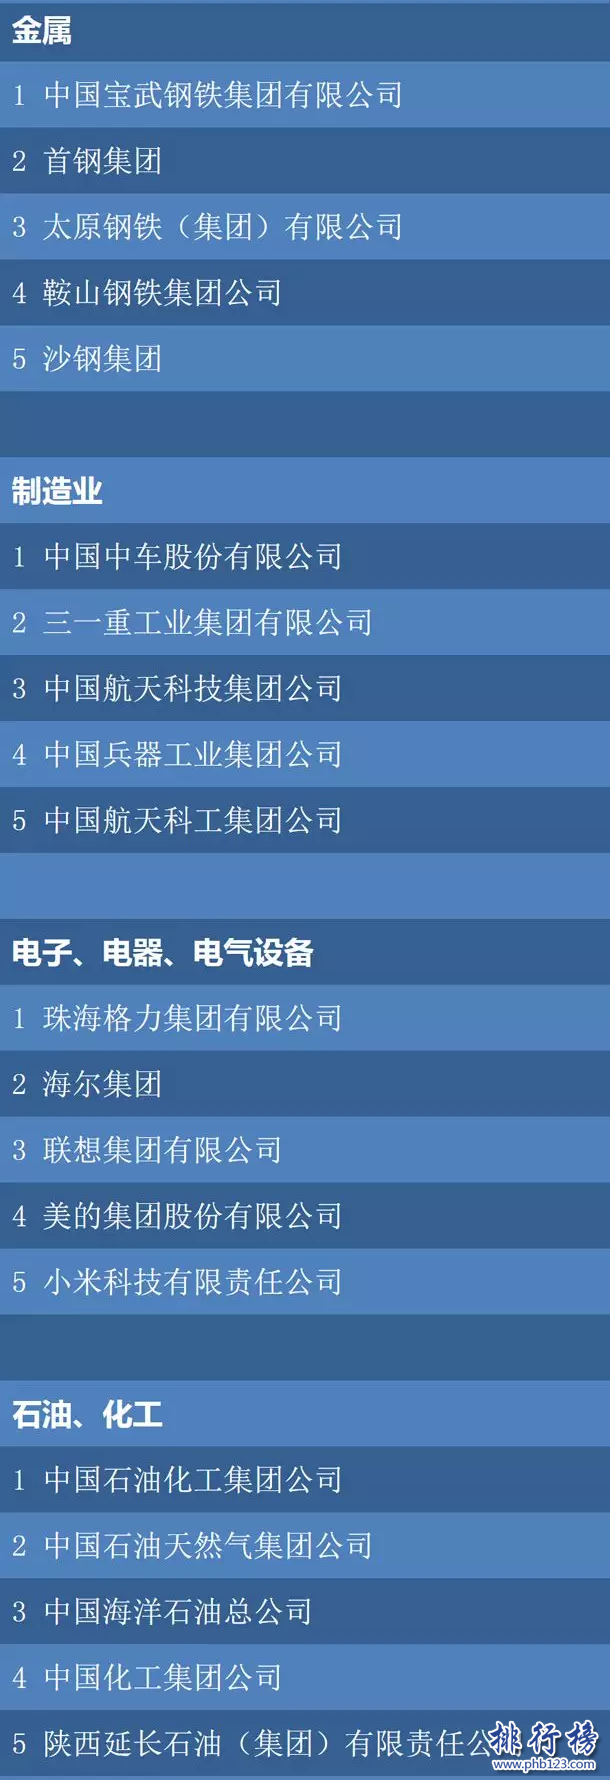 財富2018最中國具影響力僱主排名:華為阿里前二,騰訊第十